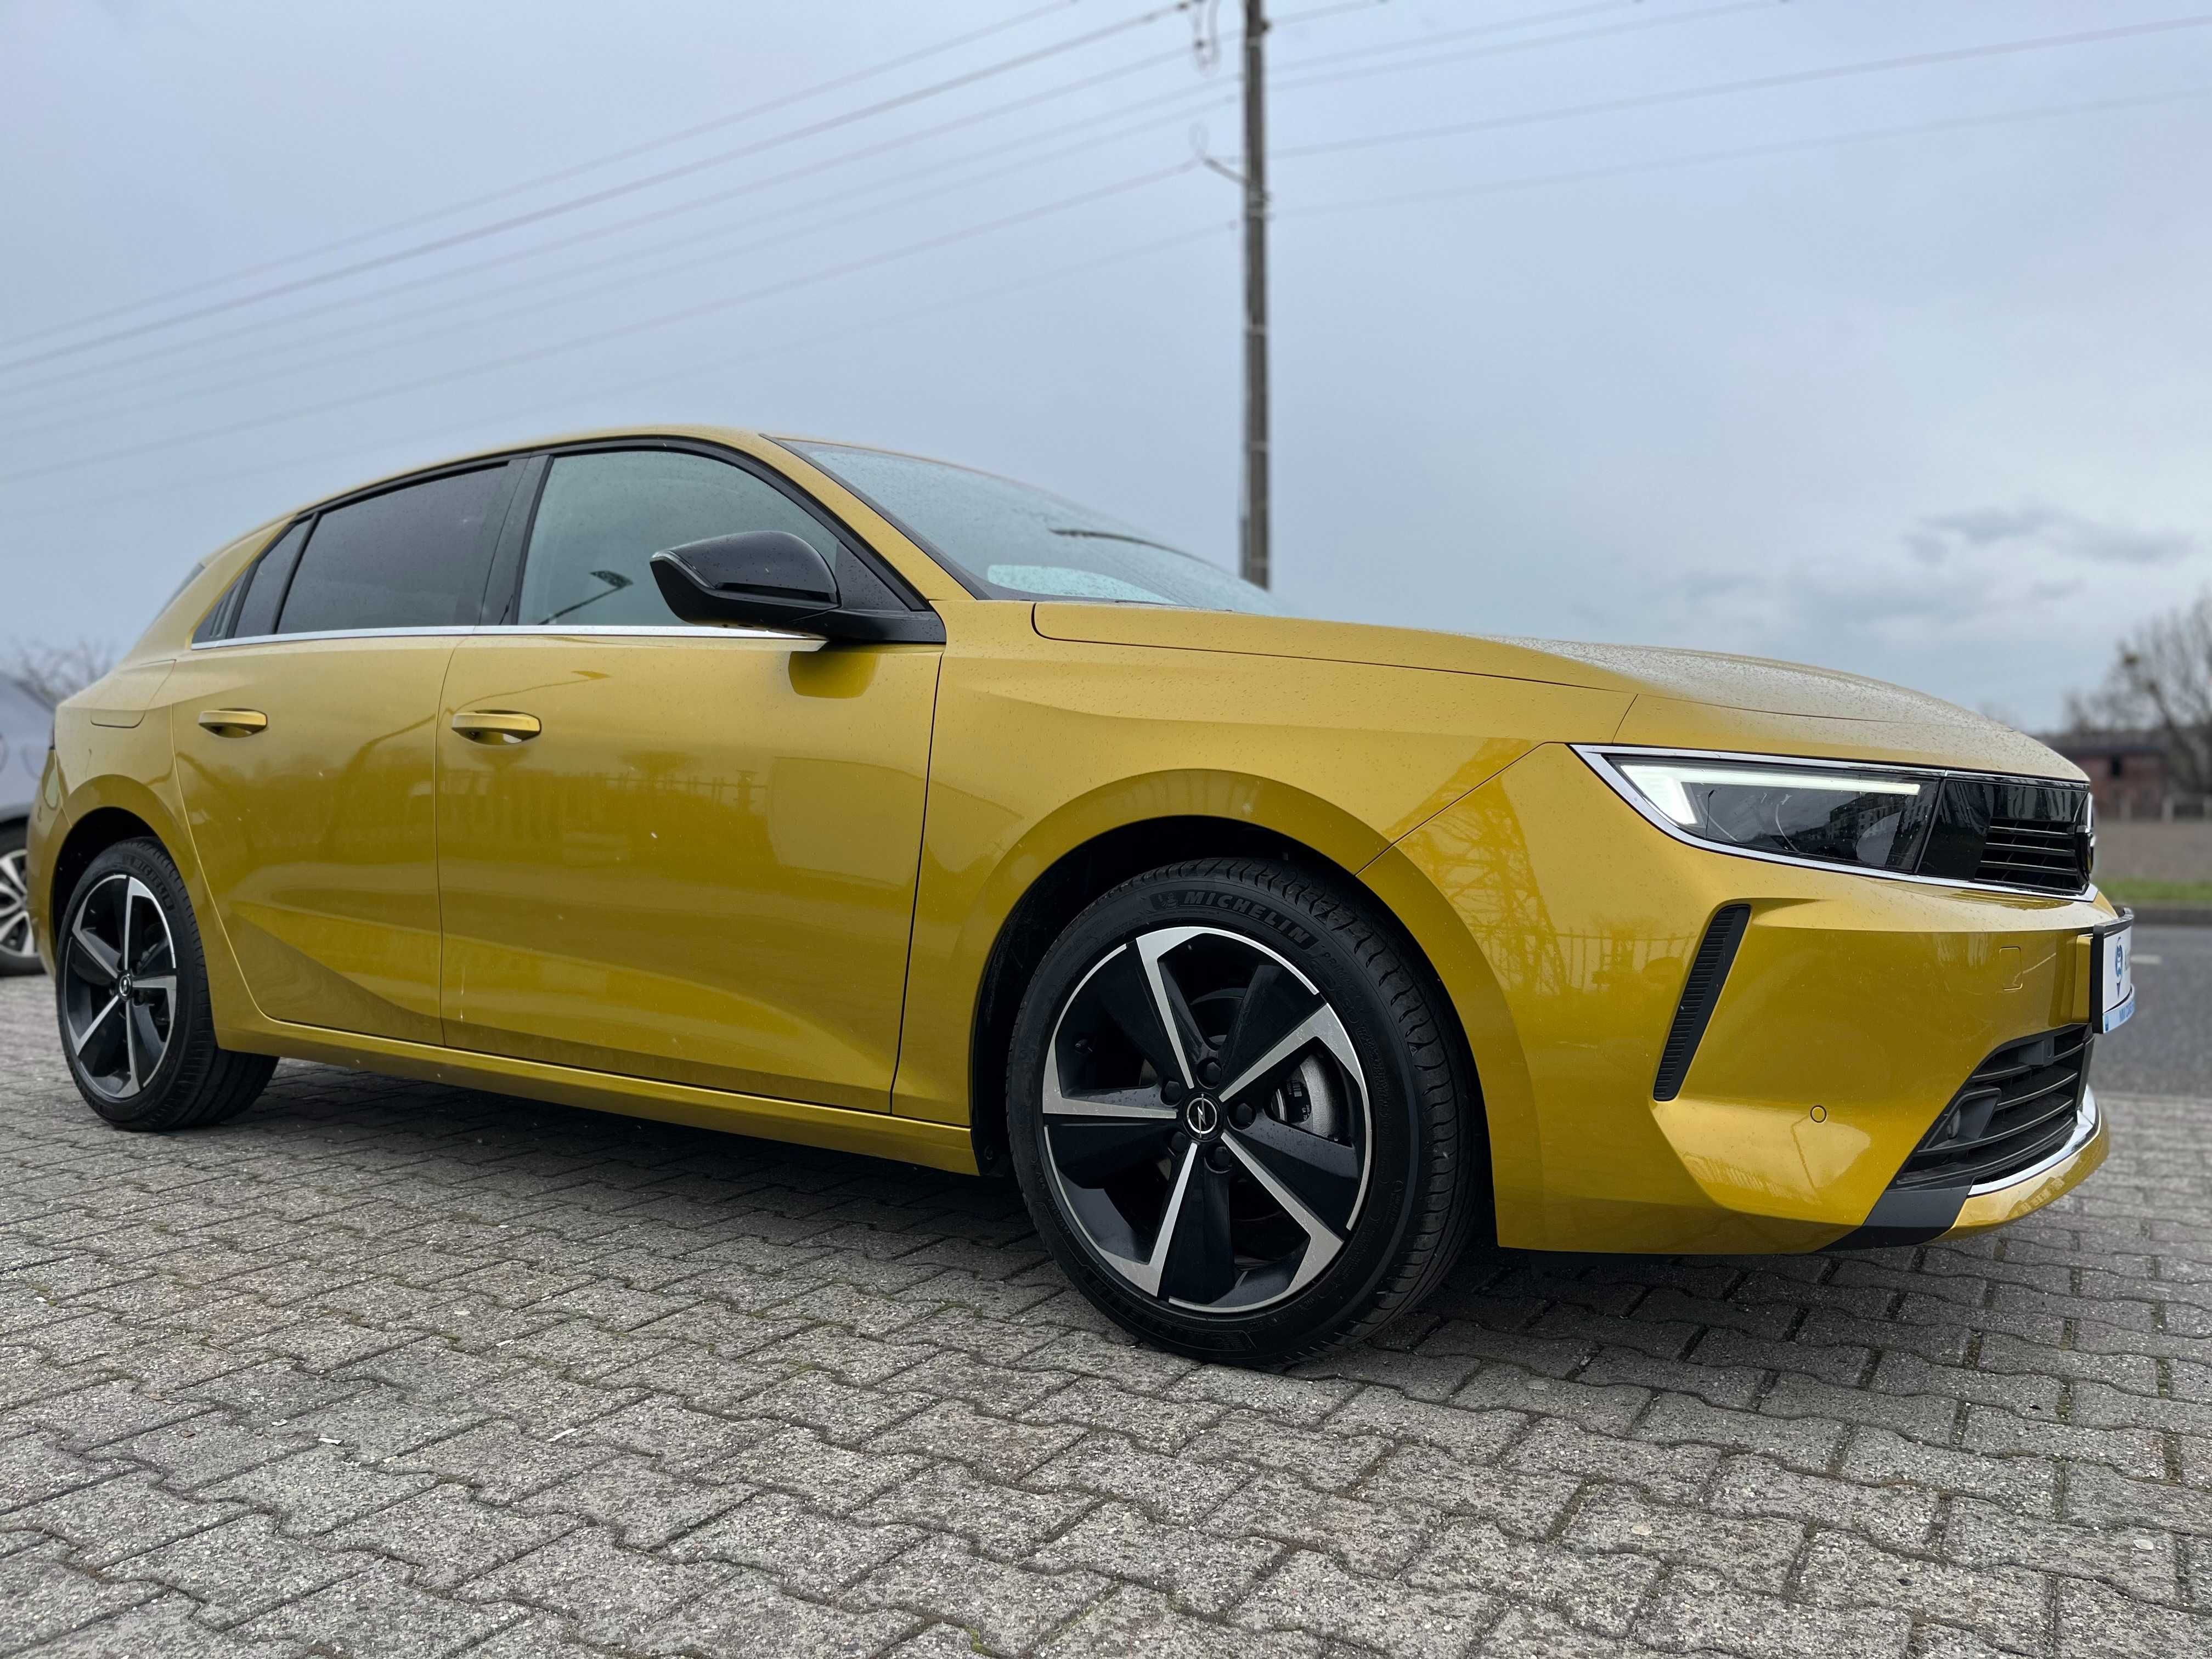 Opel Astra wynajem z wykupem w kwocie 2700zł BEZ BIK, KRD